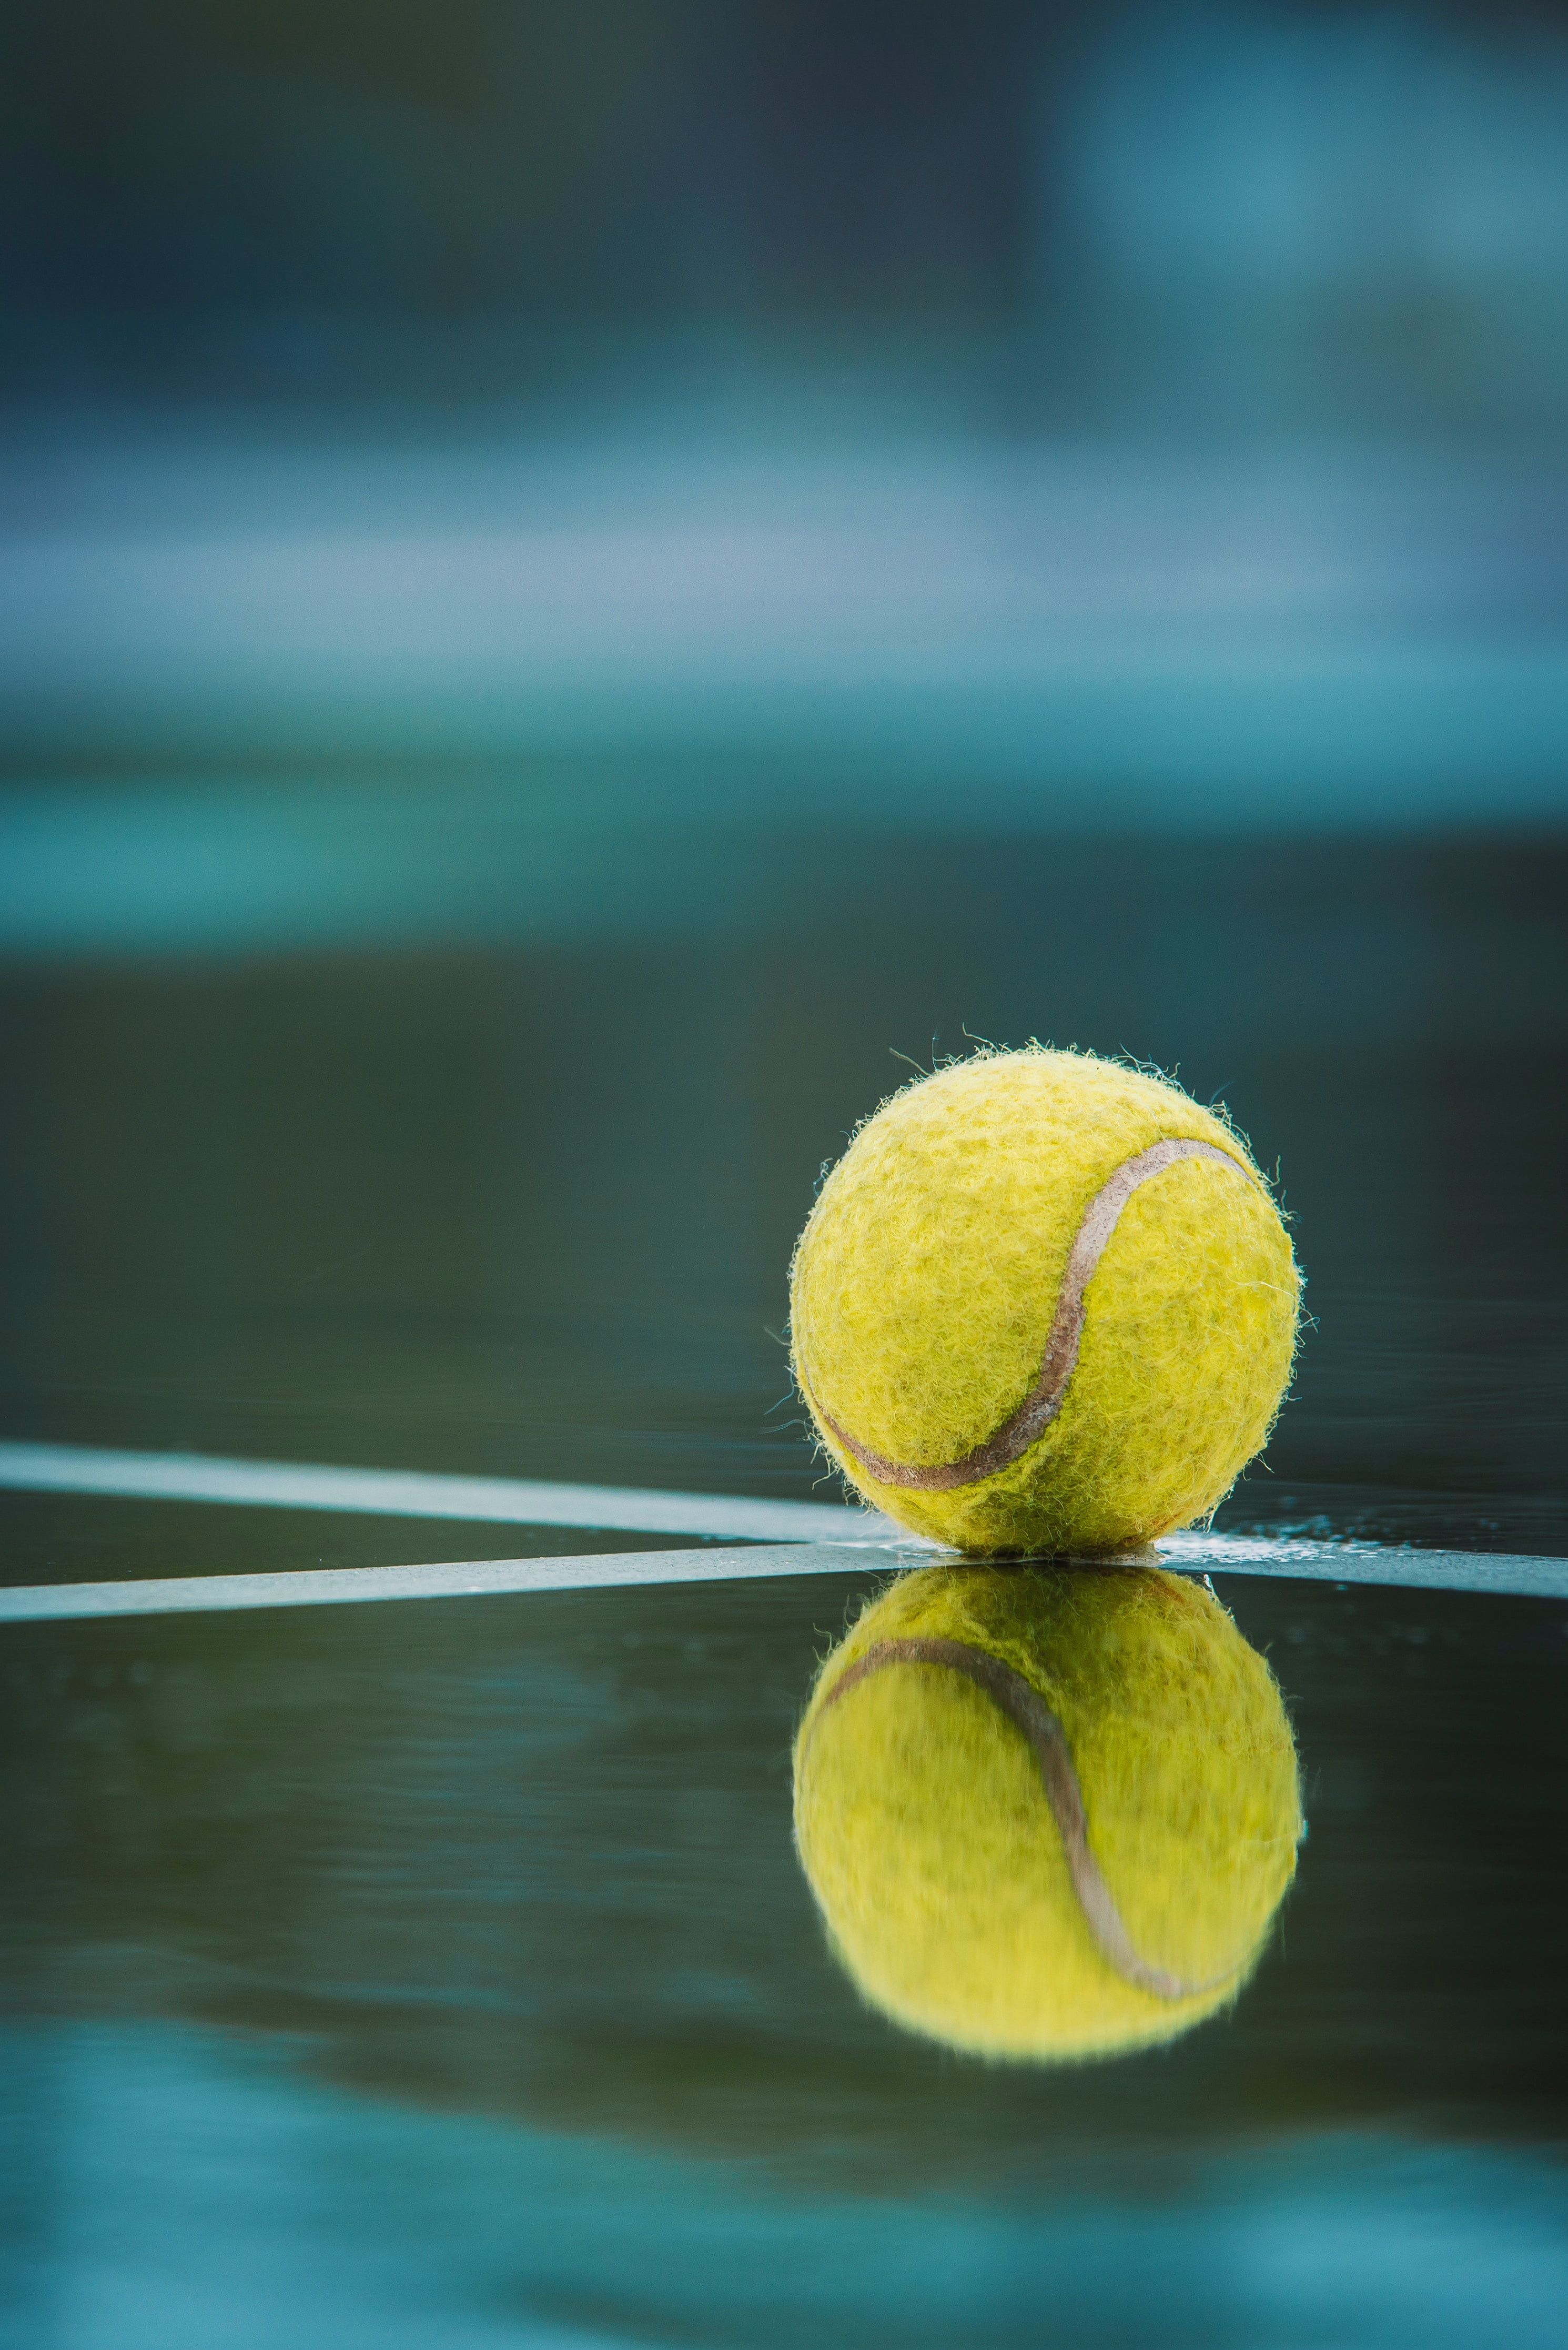 دانلود تصویر توپ مخصوص ورزش تنیس